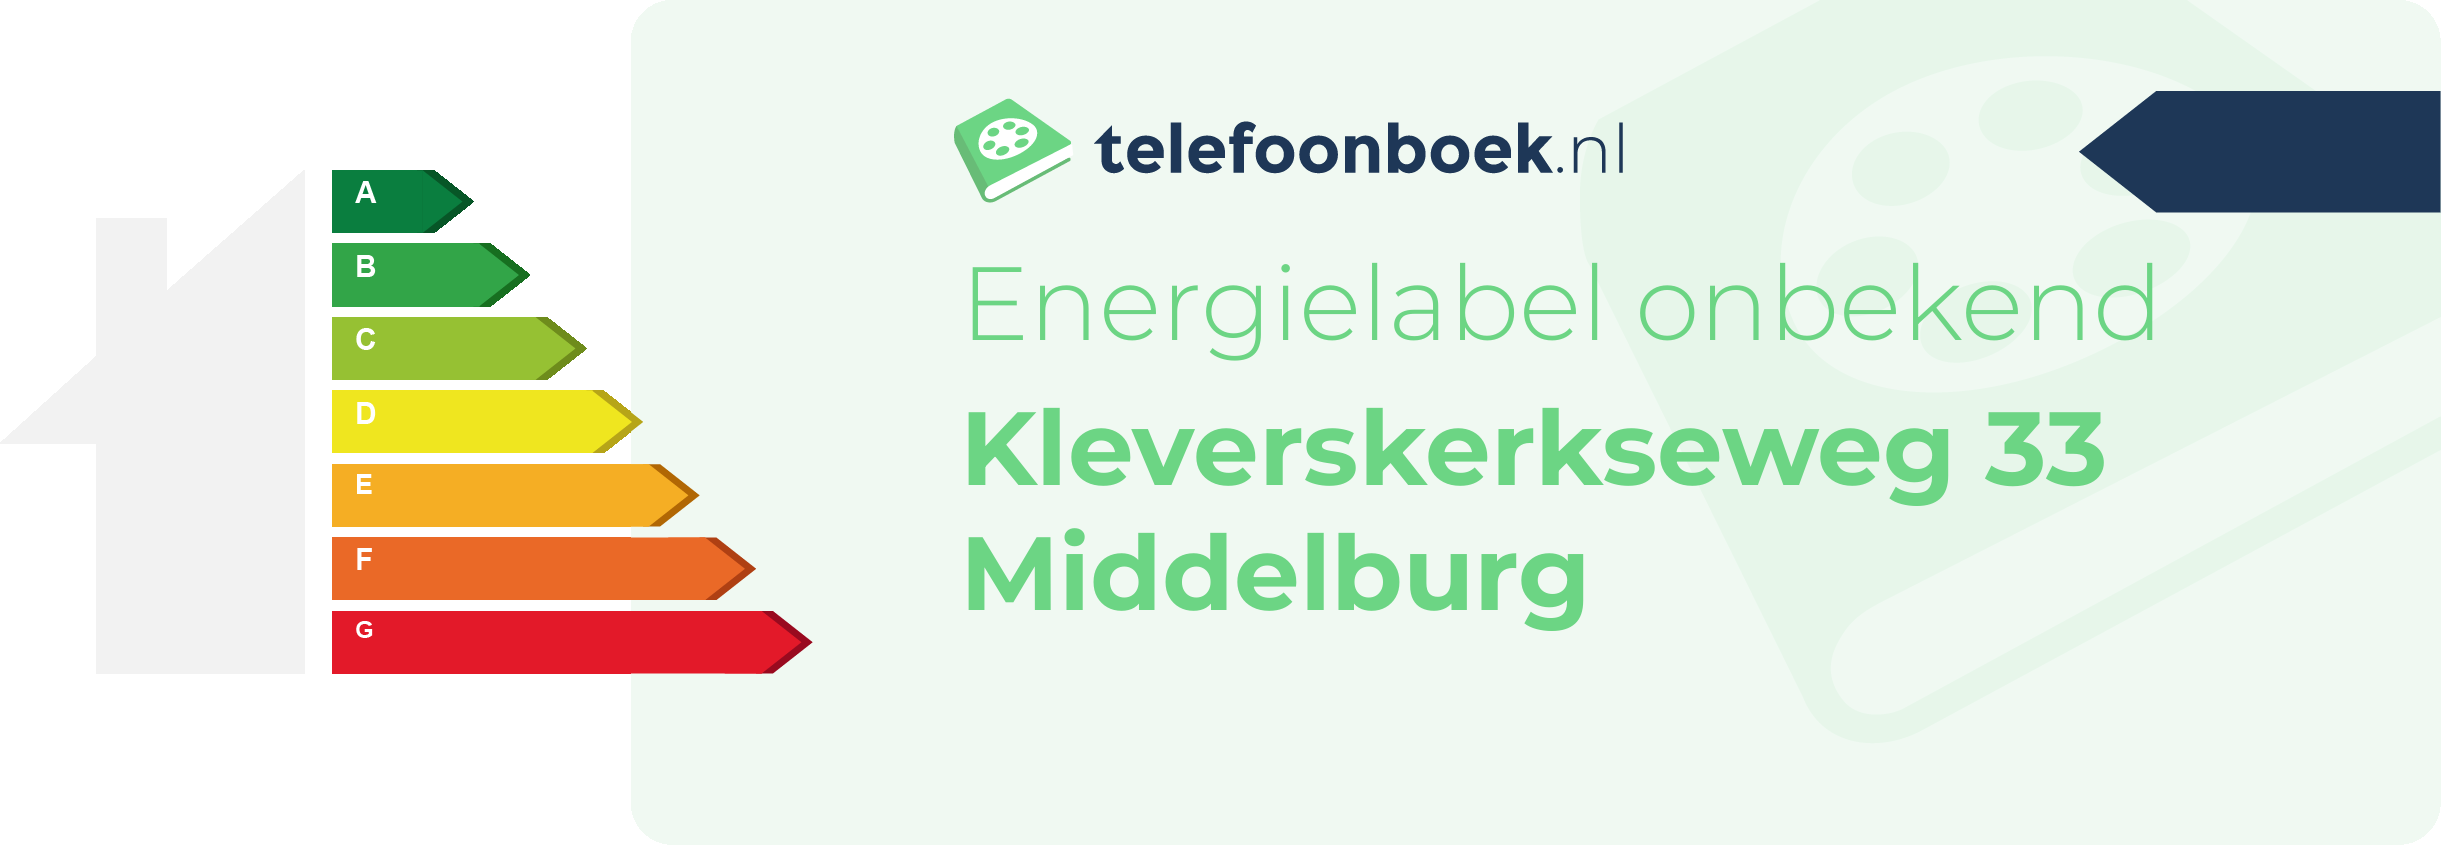 Energielabel Kleverskerkseweg 33 Middelburg